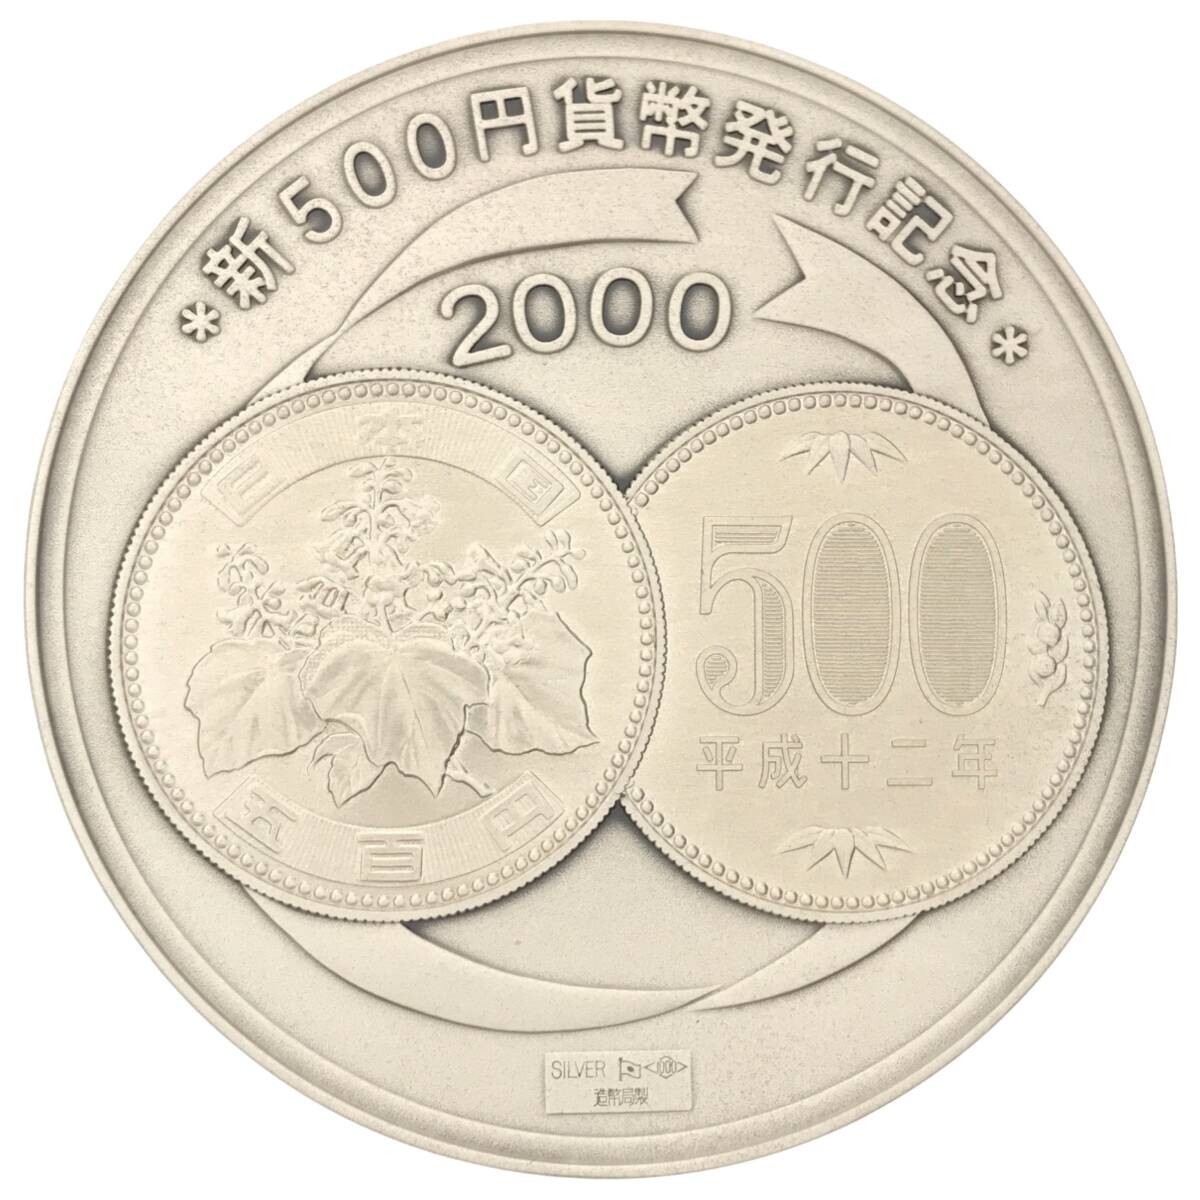 【純銀】2000年 新500円貨幣 発行記念メダル SILVER 1000刻印 造幣局製 平成12年 専用ケース付き コレクション 収集 趣味 コイン M707_画像1